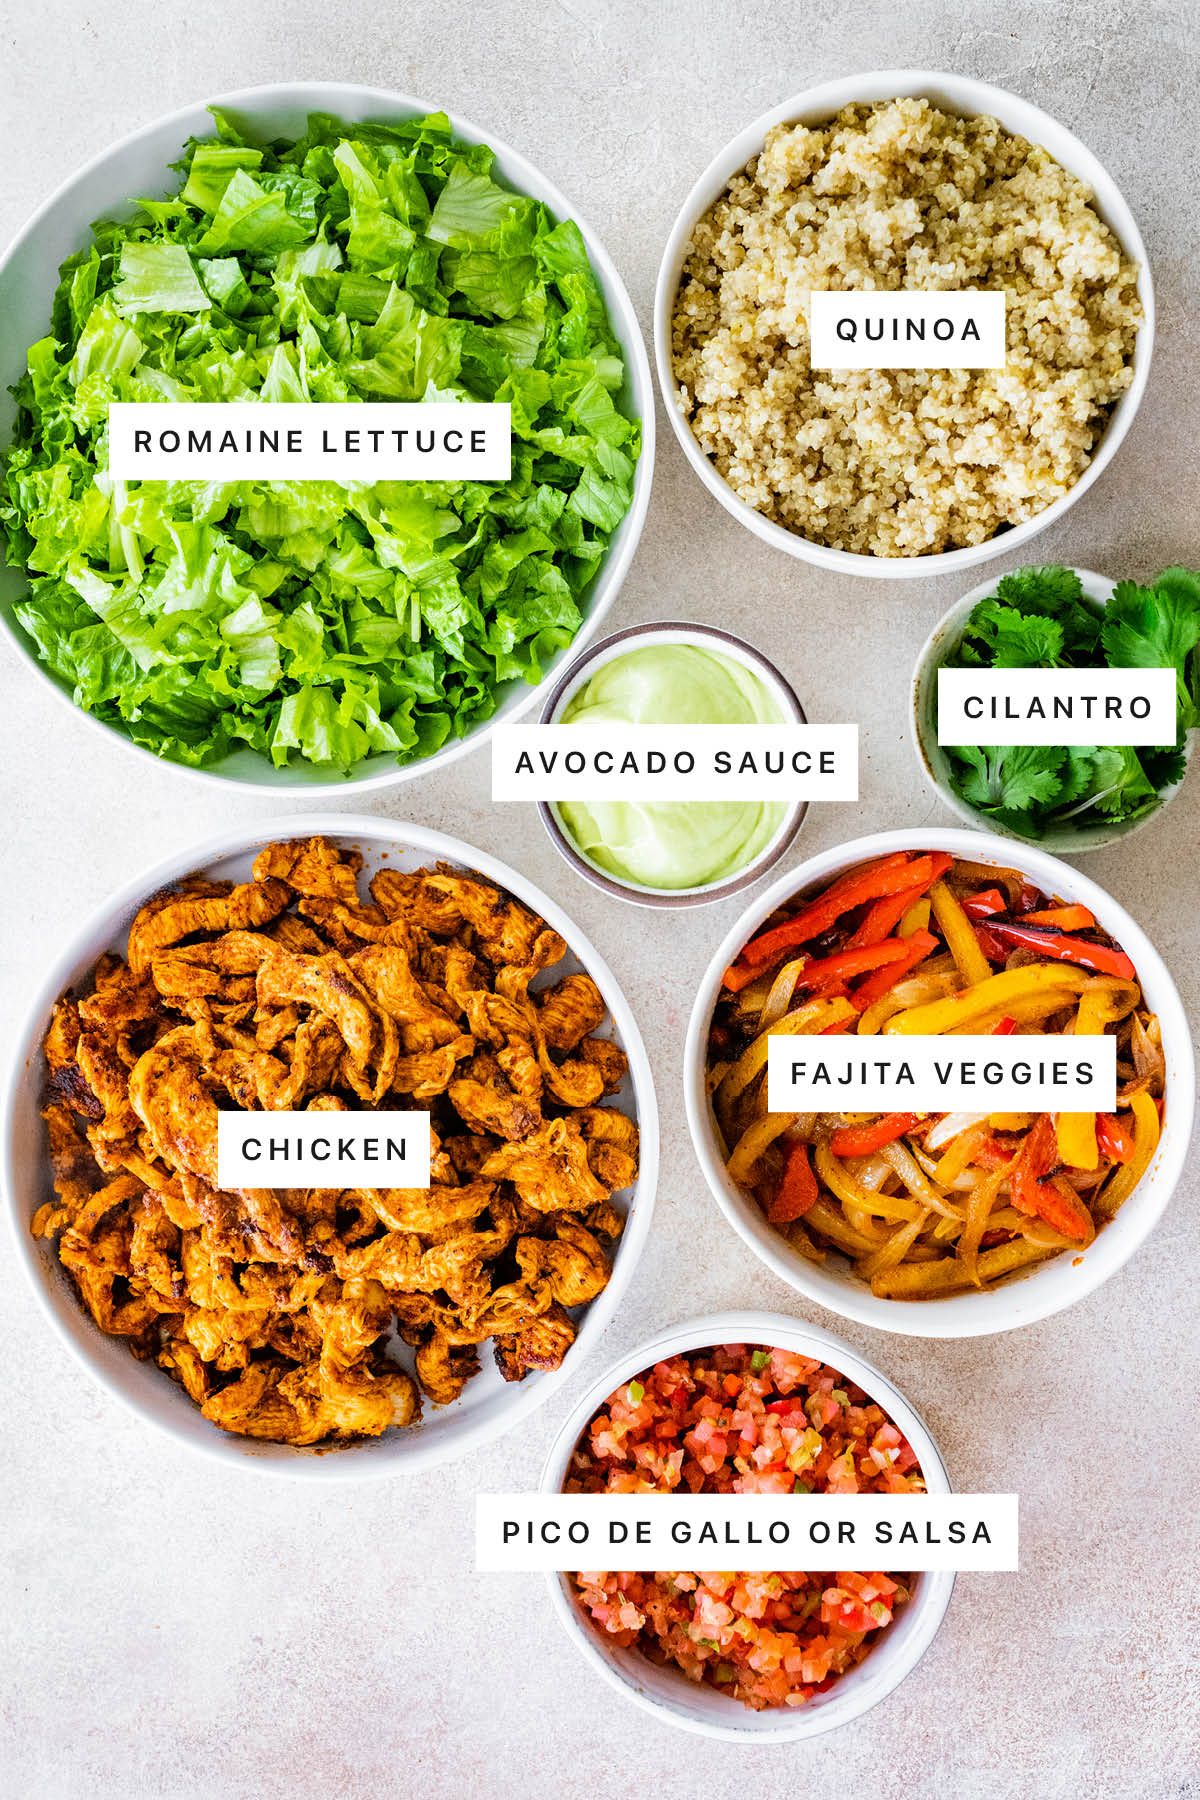 Ingredients measured out to make Chicken Fajita Bowls: romaine lettuce, quinoa, avocado sauce, cilantro, chicken, fajita veggies and pico de gallo.